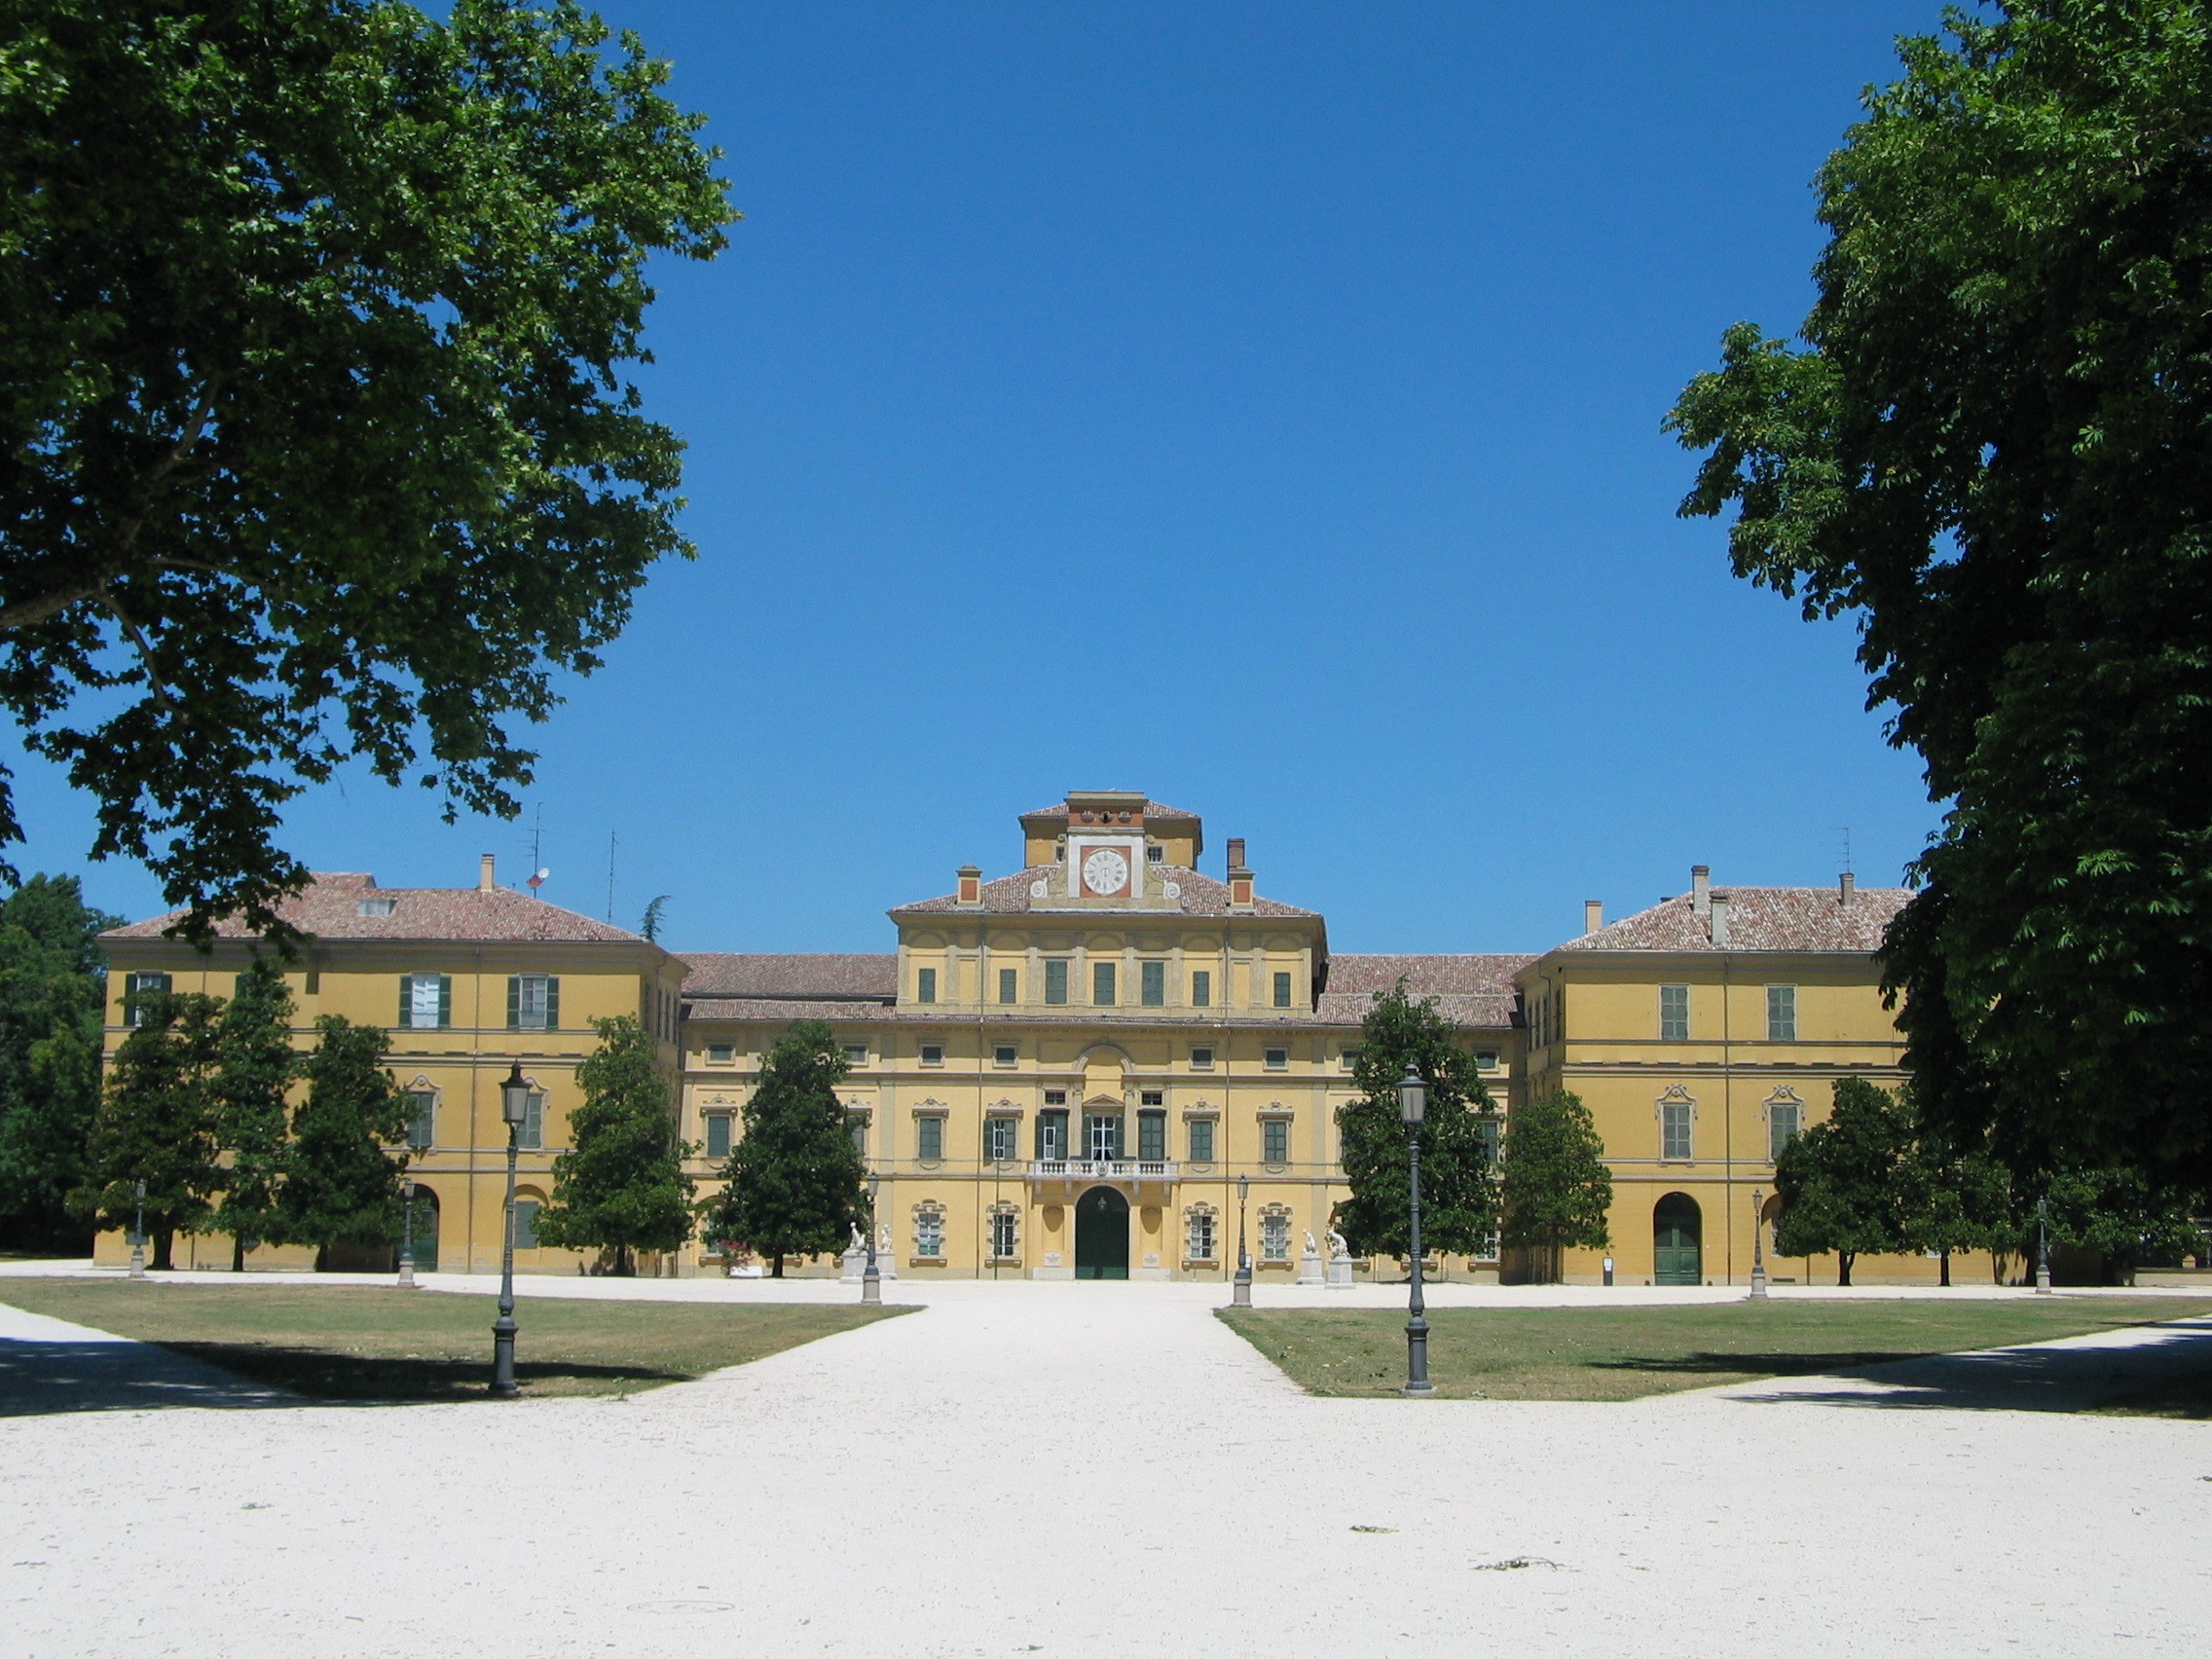 foto: https://upload.wikimedia.org/wikipedia/commons/9/9f/Il_Palazzo_Ducale_all%27interno_del_Parco_Ducale_di_Parma.jpg